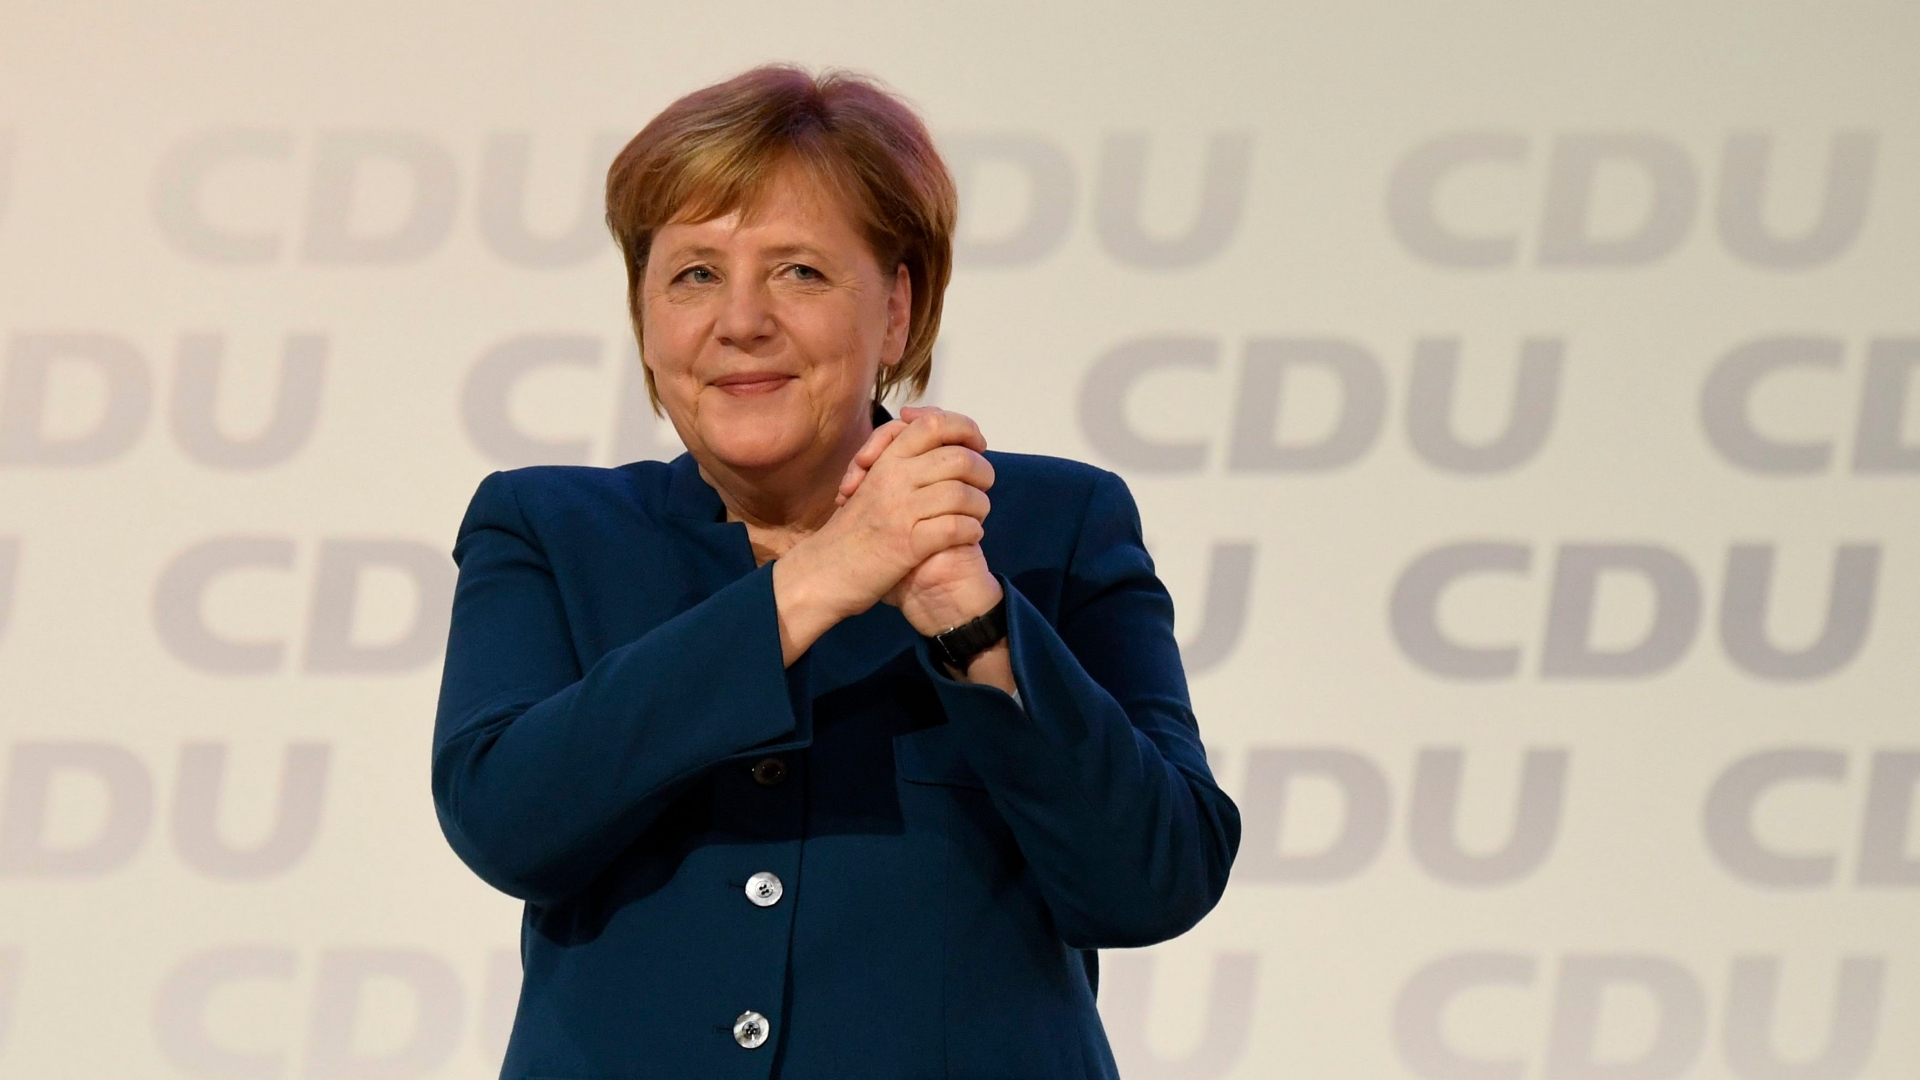 Bundeskanzlerin Angela Merkel nach ihrer Rede dem 31. Bundesparteitag der CDU | Bildquelle: CLEMENS BILAN/EPA-EFE/REX/Shutte